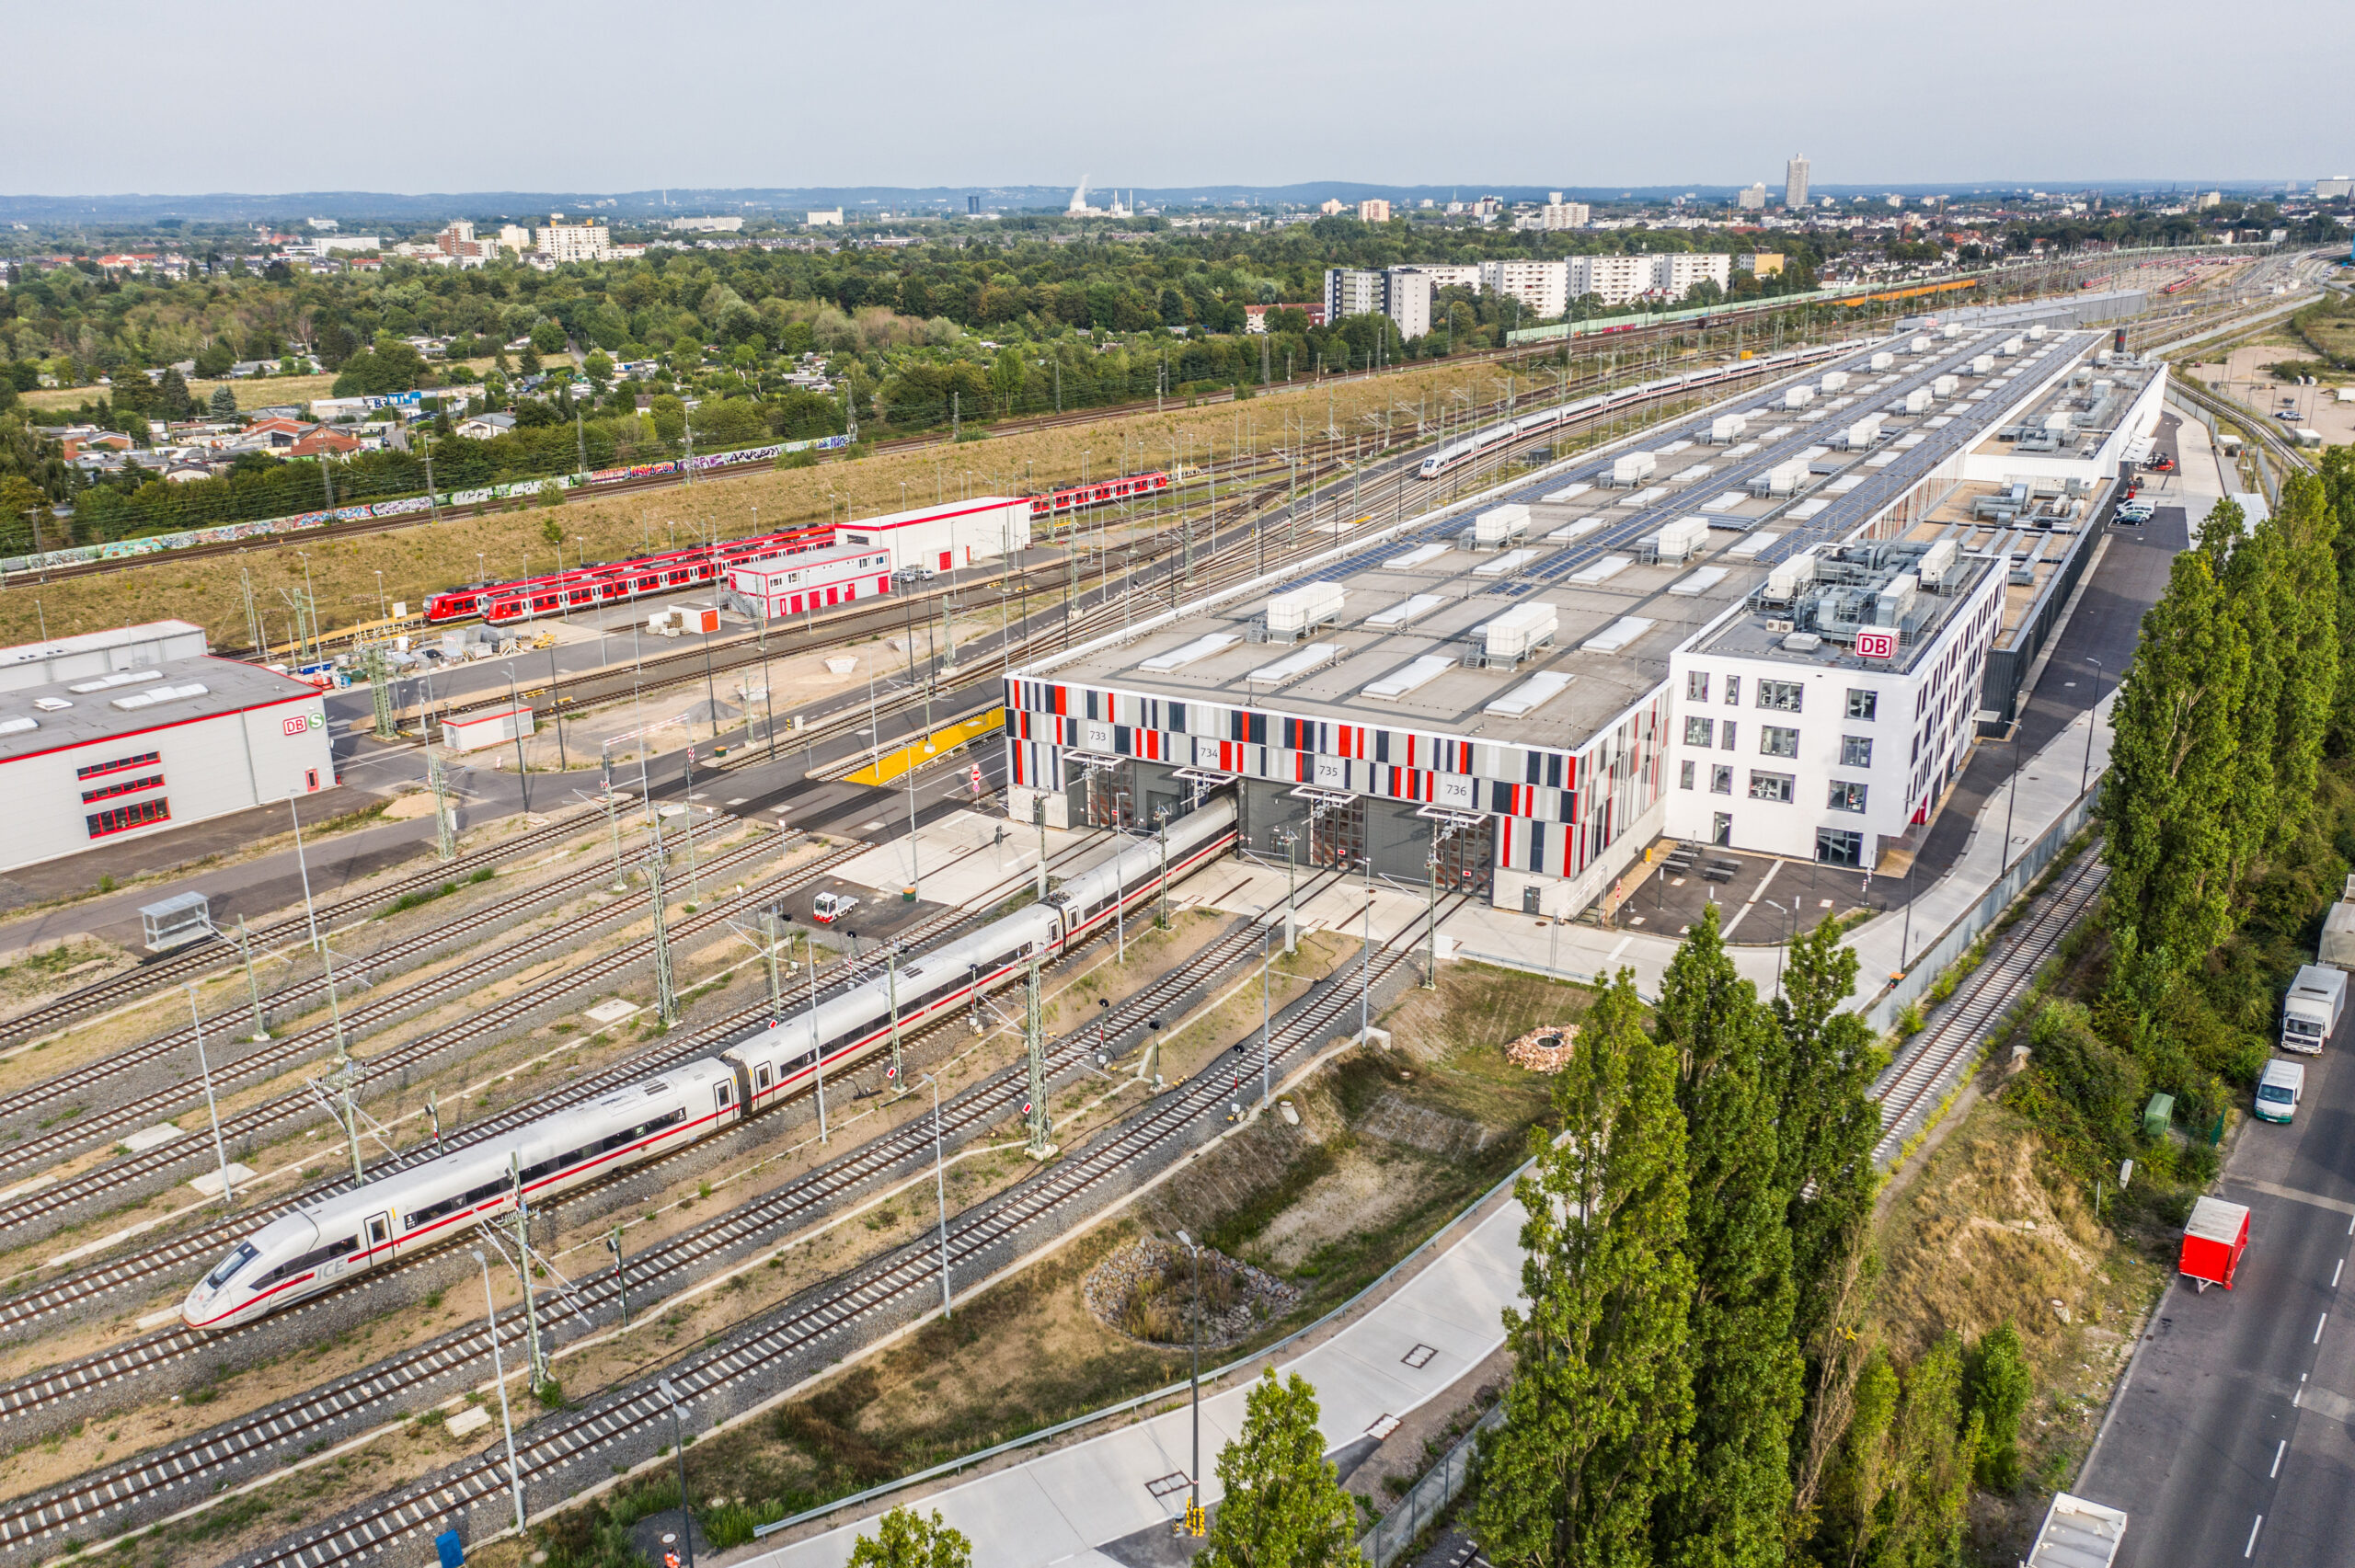 Übersicht über das ICE-Werk mit der 410 Meter langen Werkhalle in Köln-Nippes